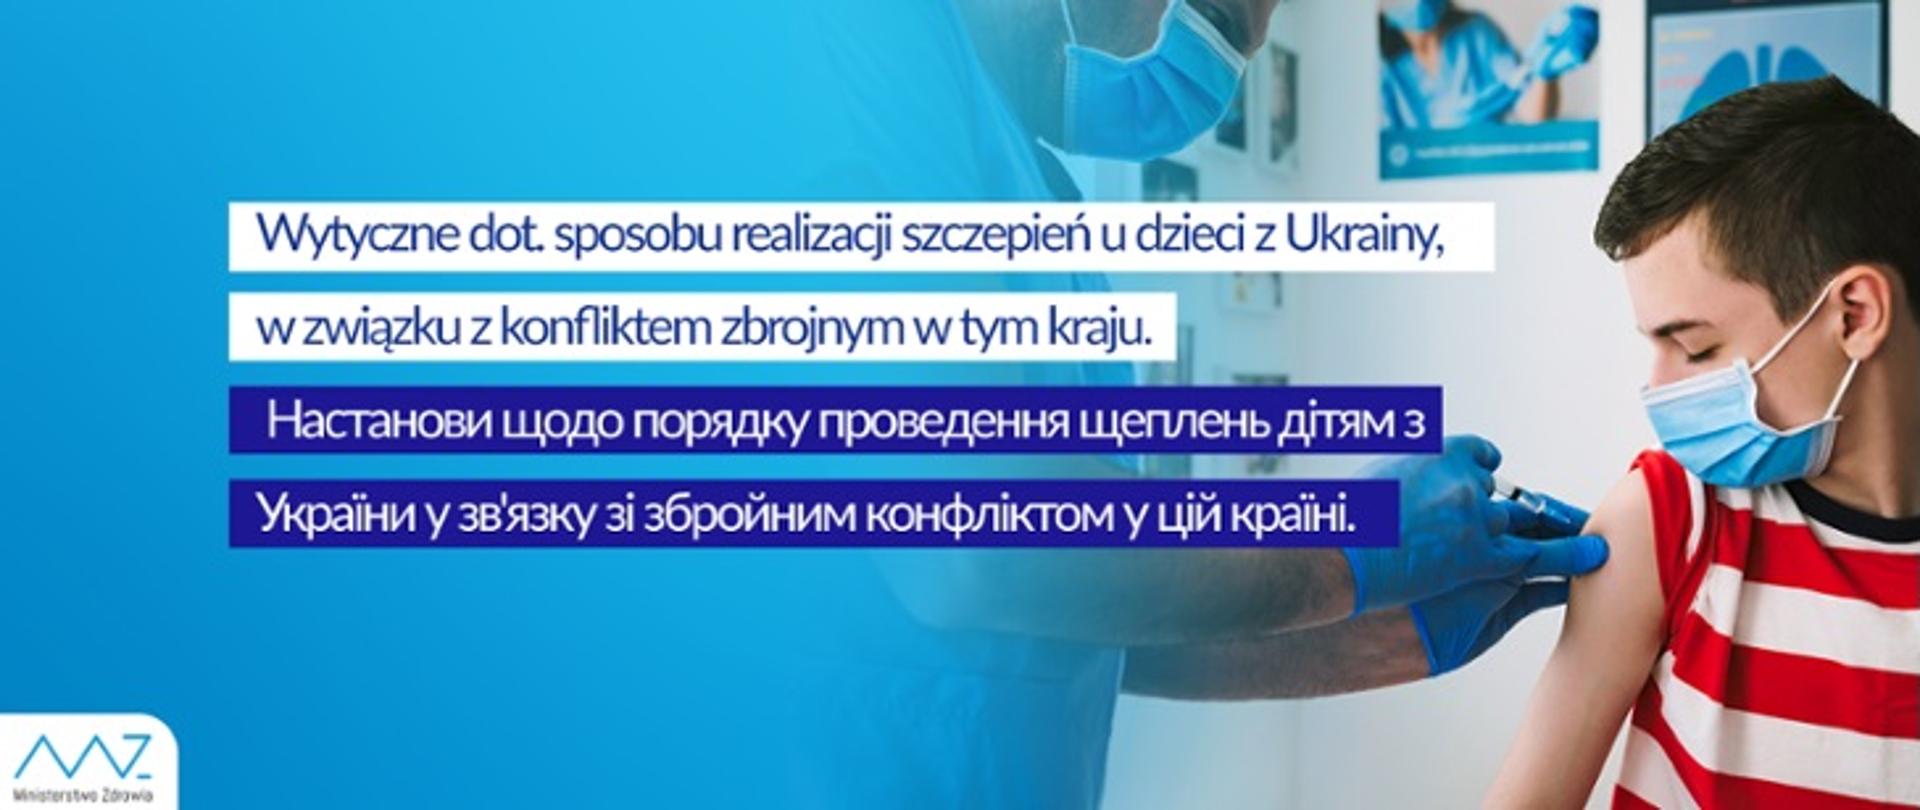 Wytyczne dot. sposobu realizacji szczepień dzieci z Ukrainy.